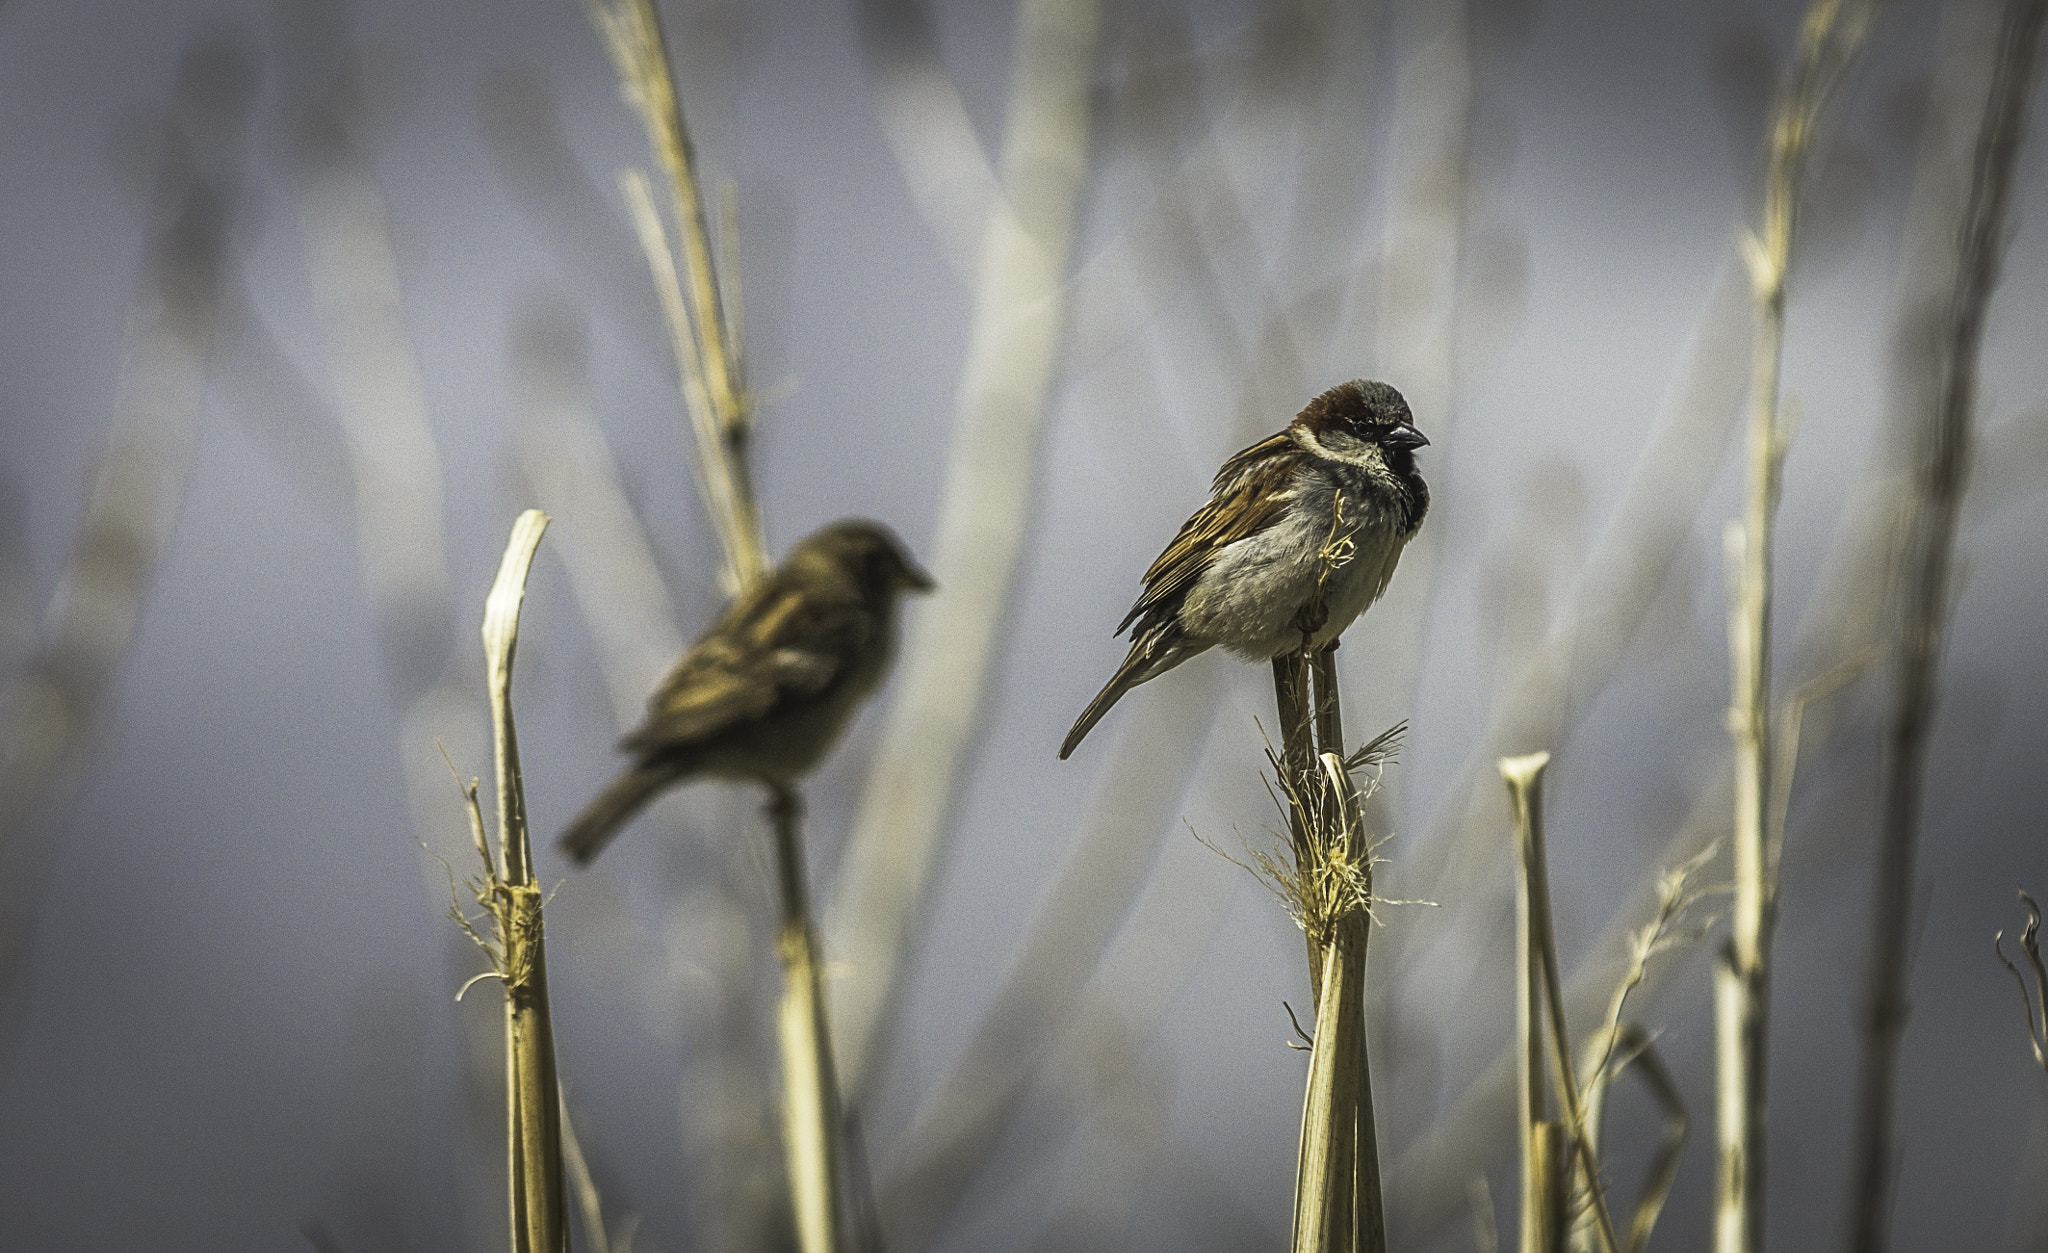 Sony SLT-A77 sample photo. Common sparrow photography